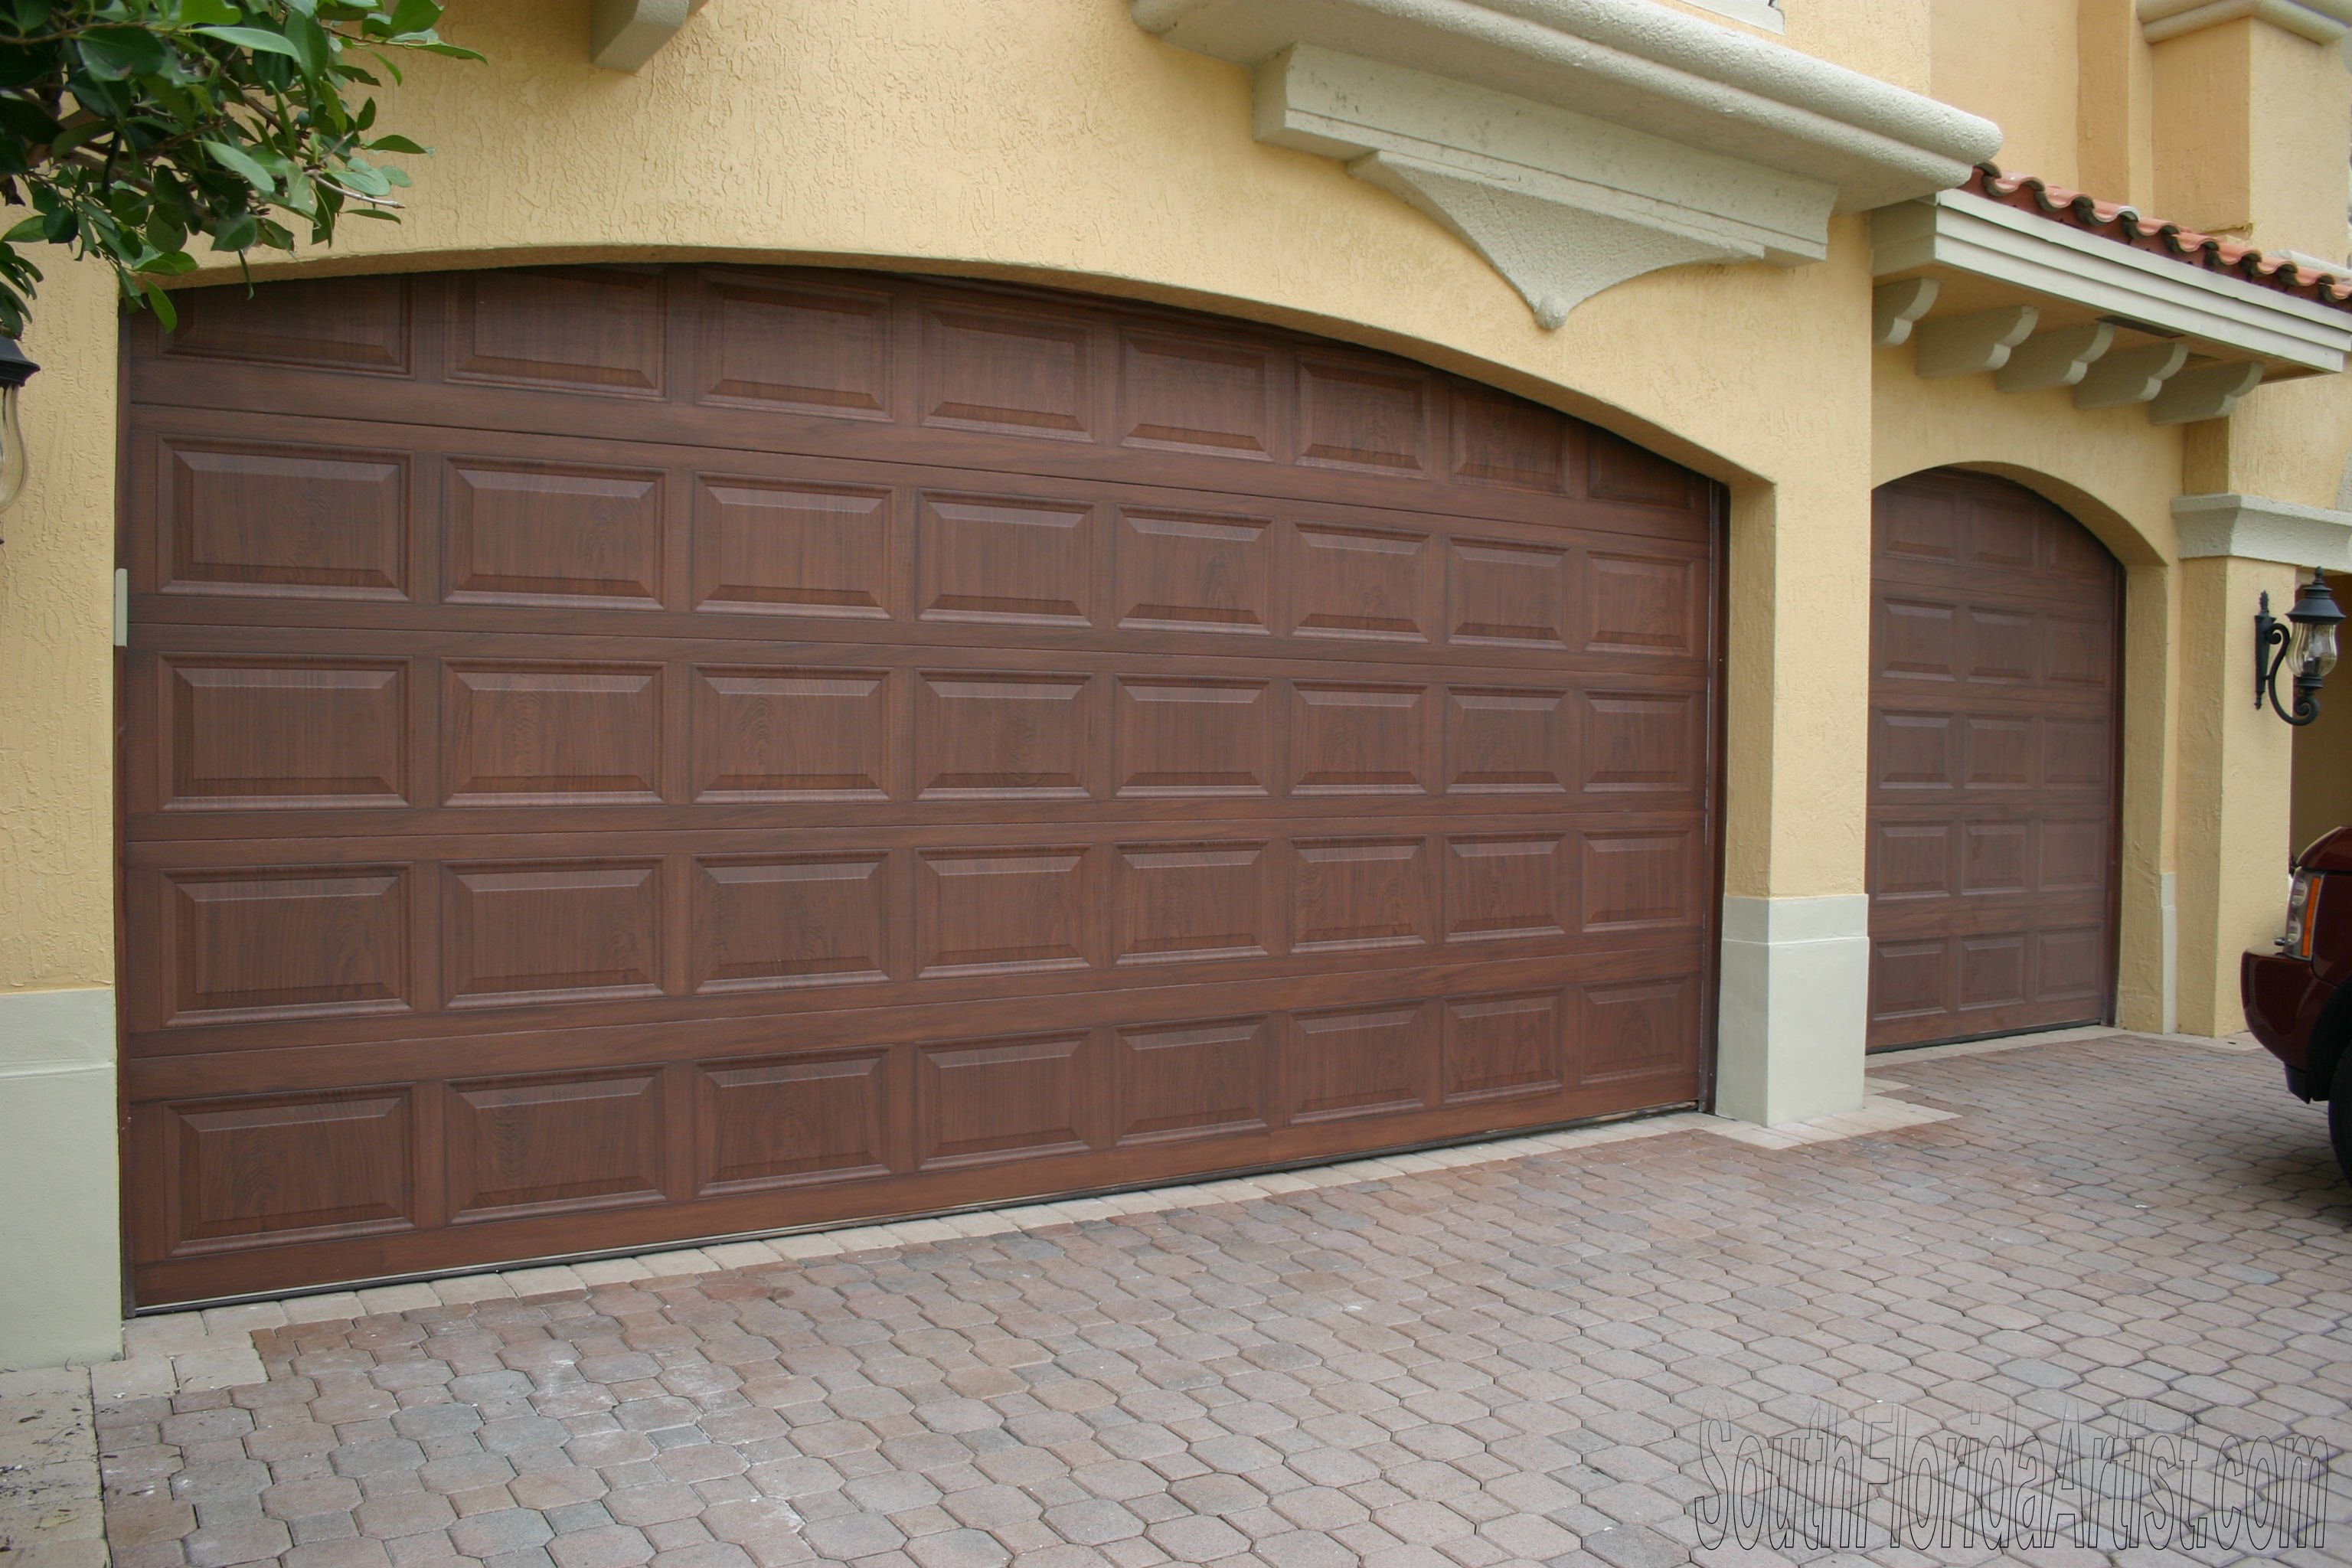 Residential - Exterior - Garage doors